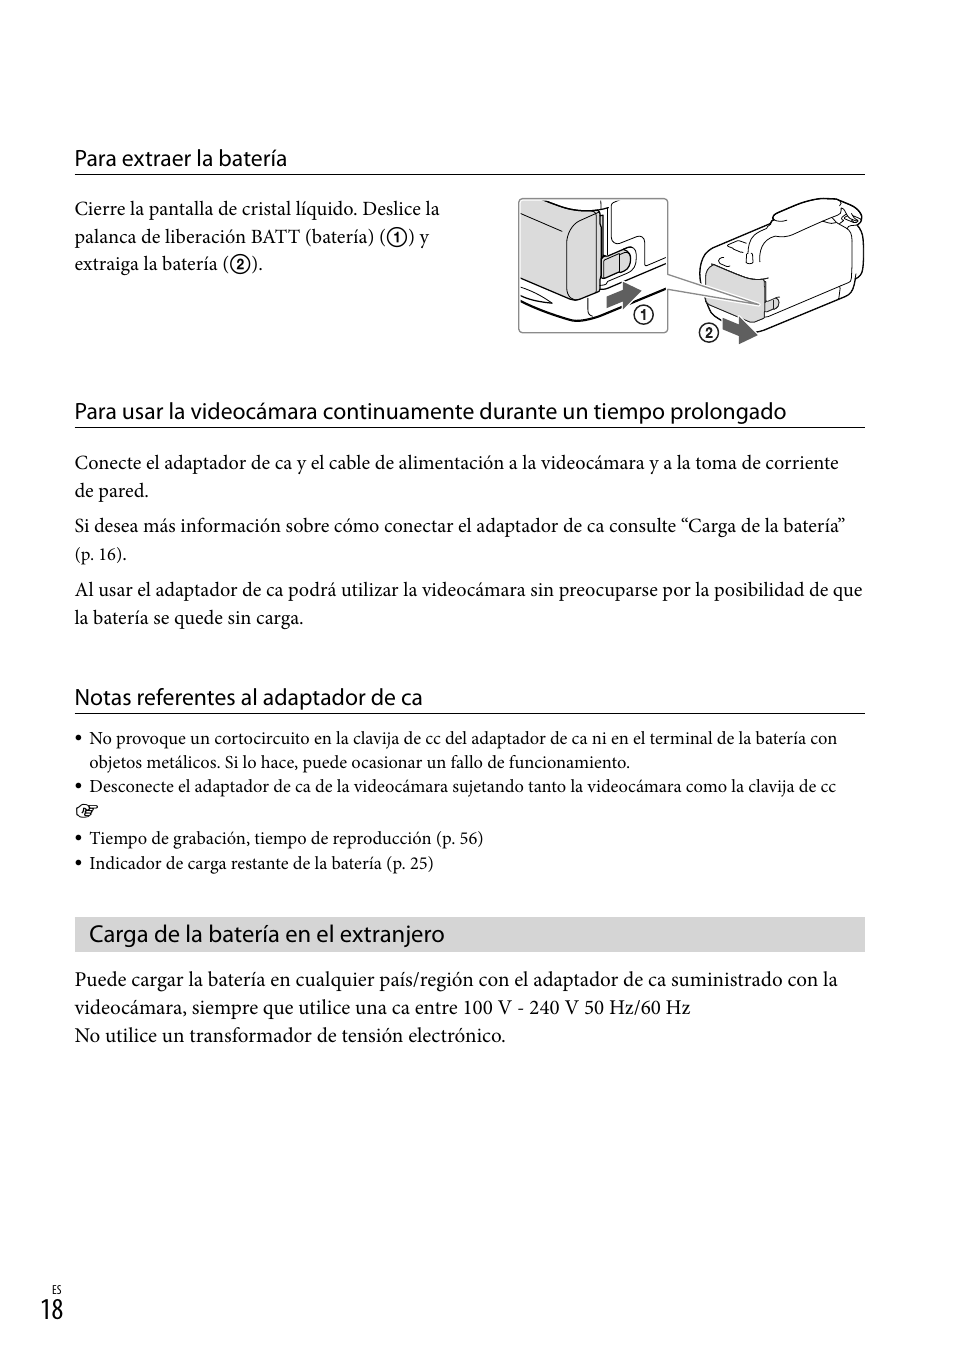 Carga de la batería en el extranjero, Нa) (18), Para extraer la batería | Notas referentes al adaptador de ca | Sony HDR-CX430V Manual del usuario | Página 18 / 76